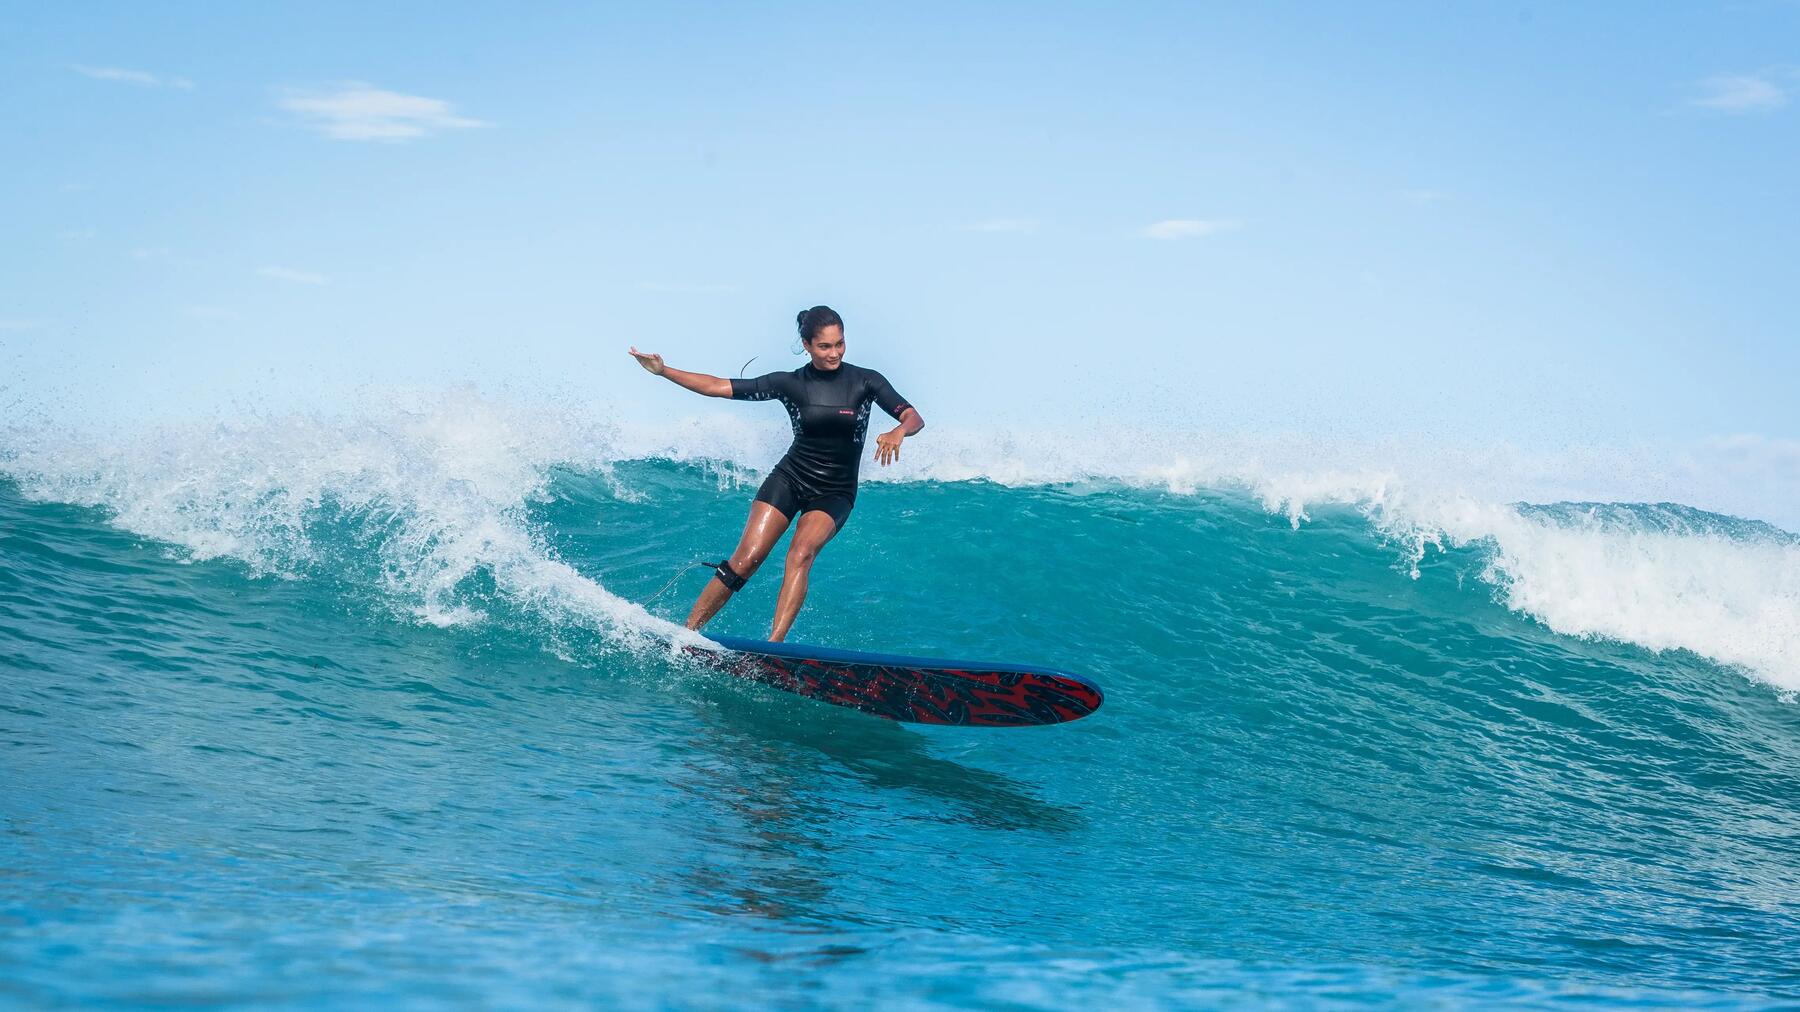 Hoe kan je beter leren surfen op kleine golven?